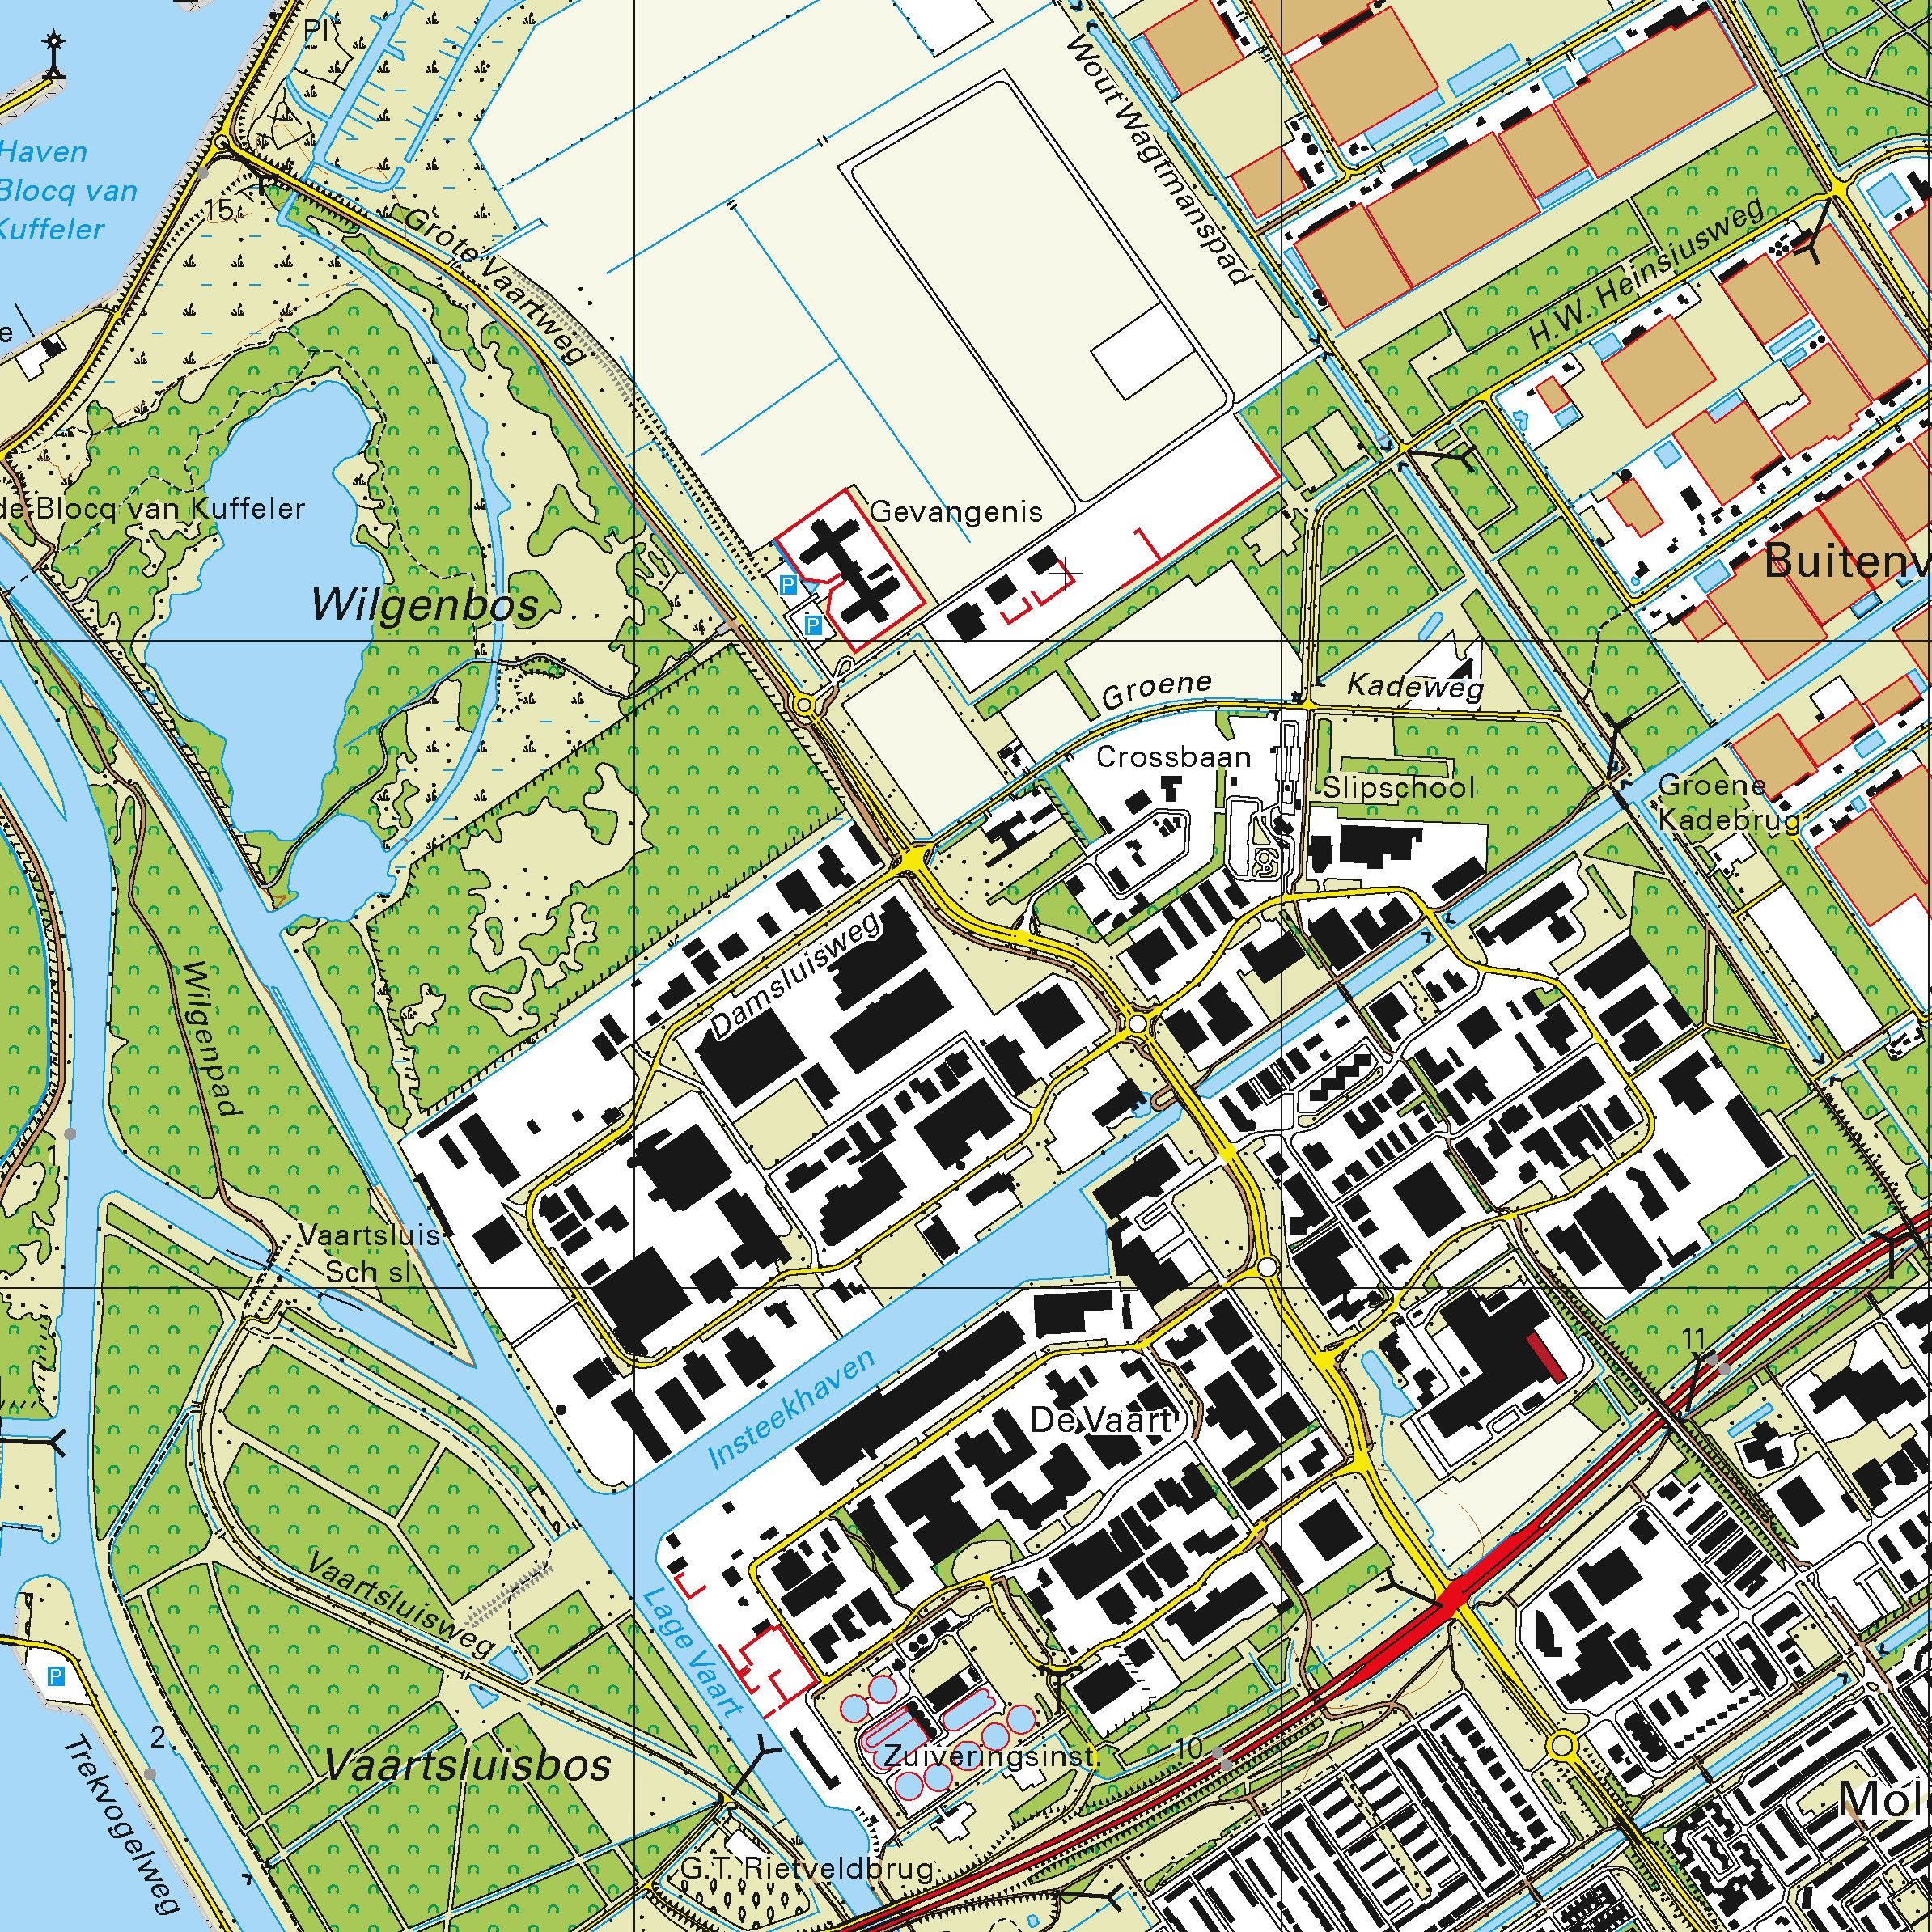 Topografische kaart schaal 1:25.000 (Volendam, Monnickendam, Marken, Almere)